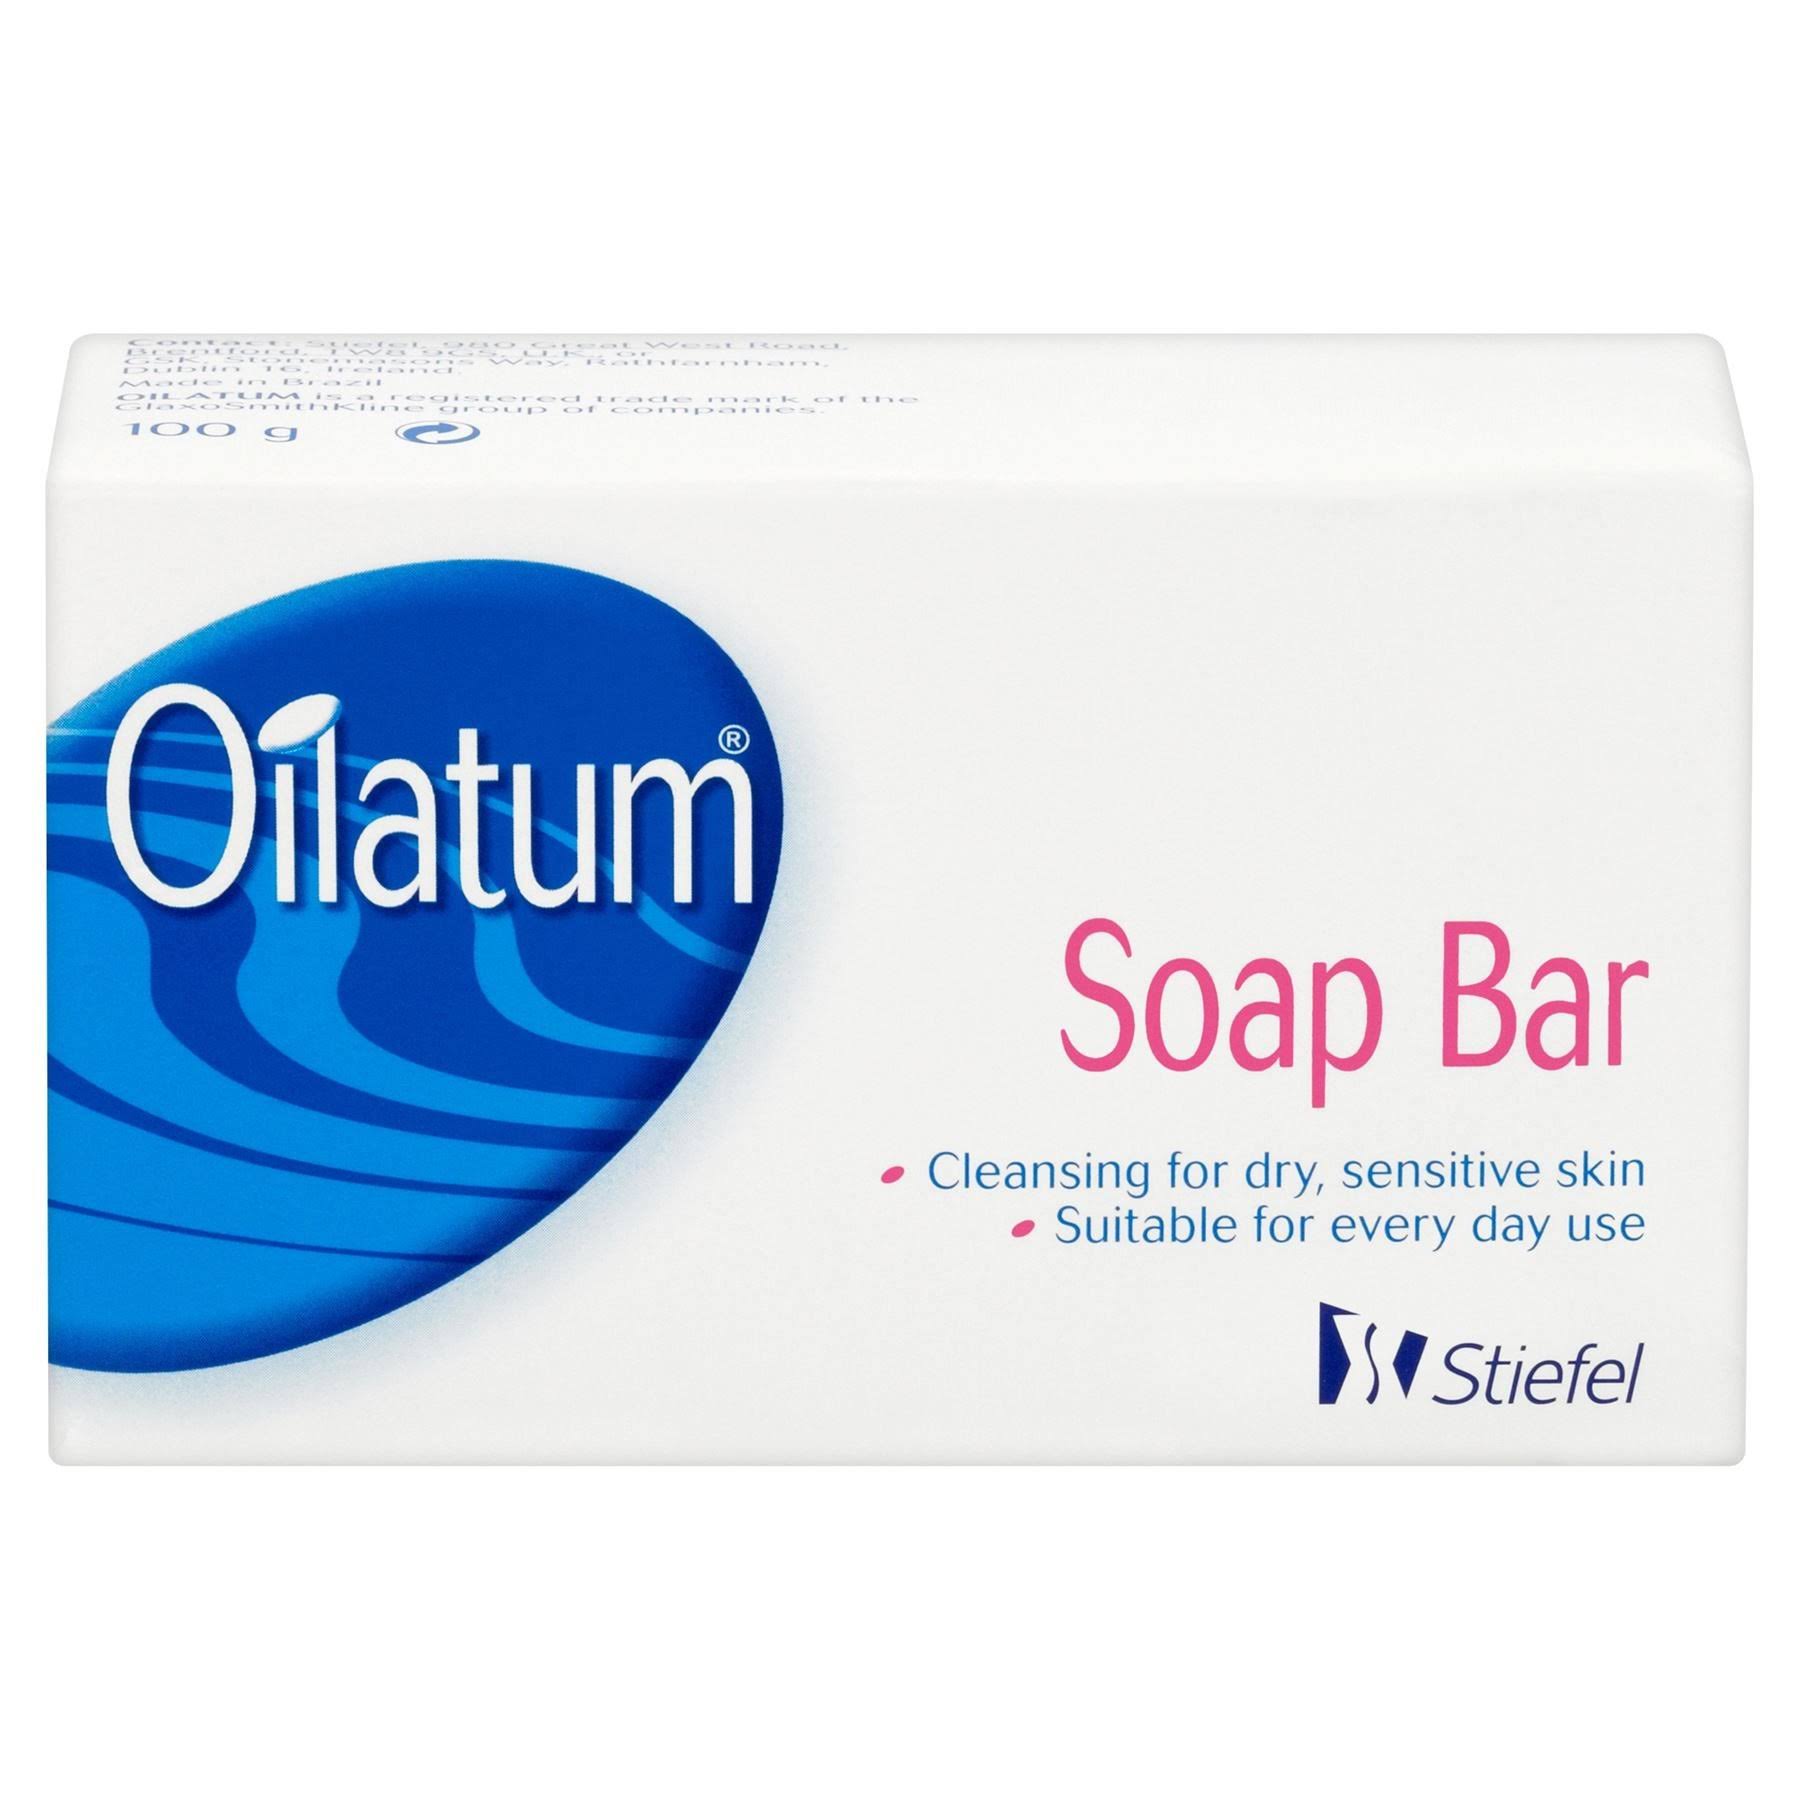 Oilatum Dry Skin Cleanser Soap Bar - 100g